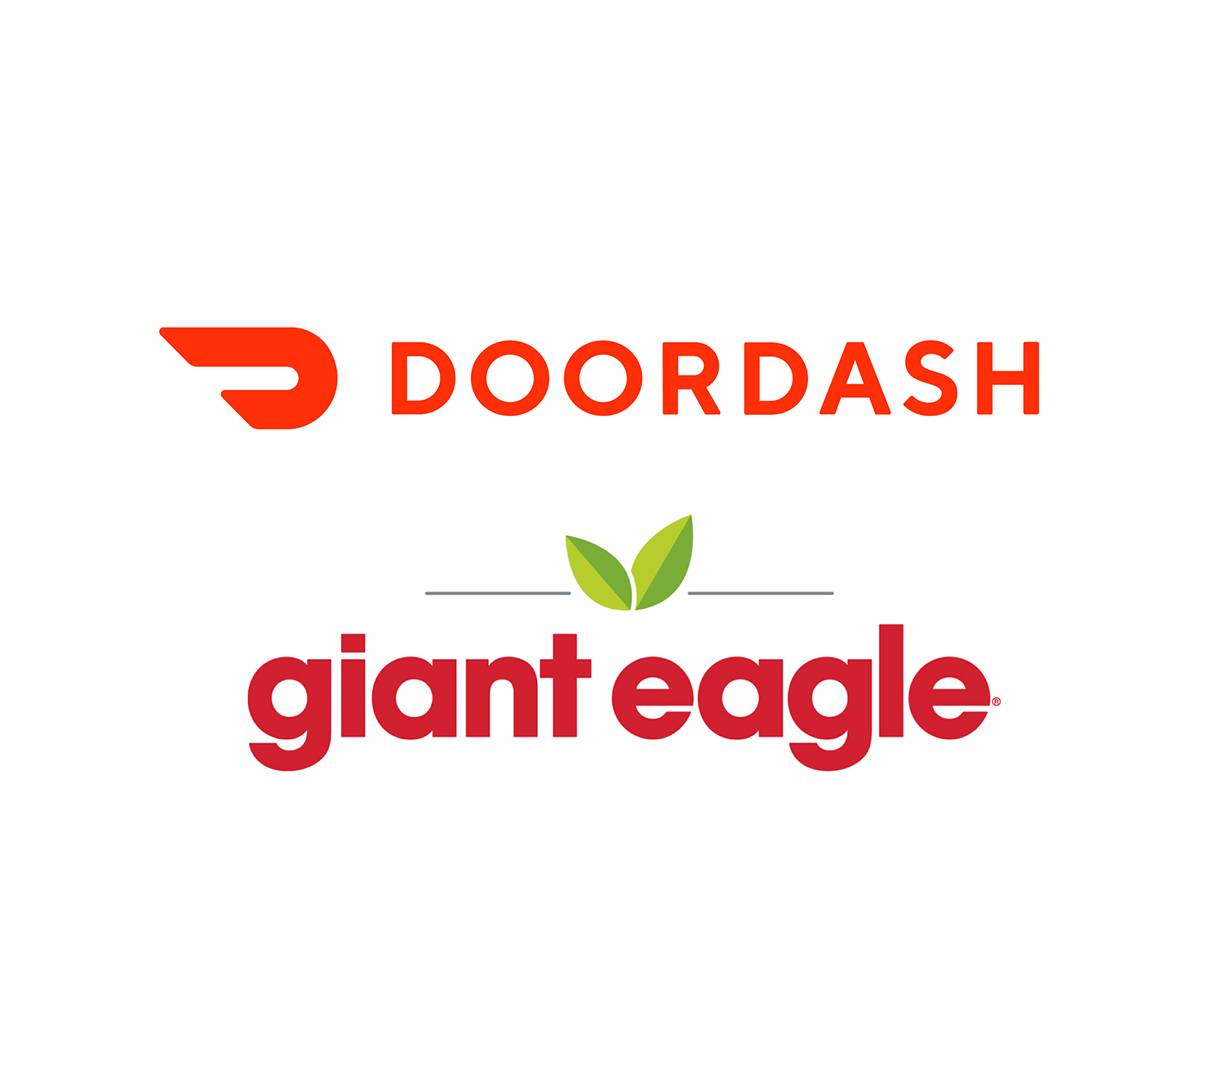 DoorDash and Giant Eagle Partner